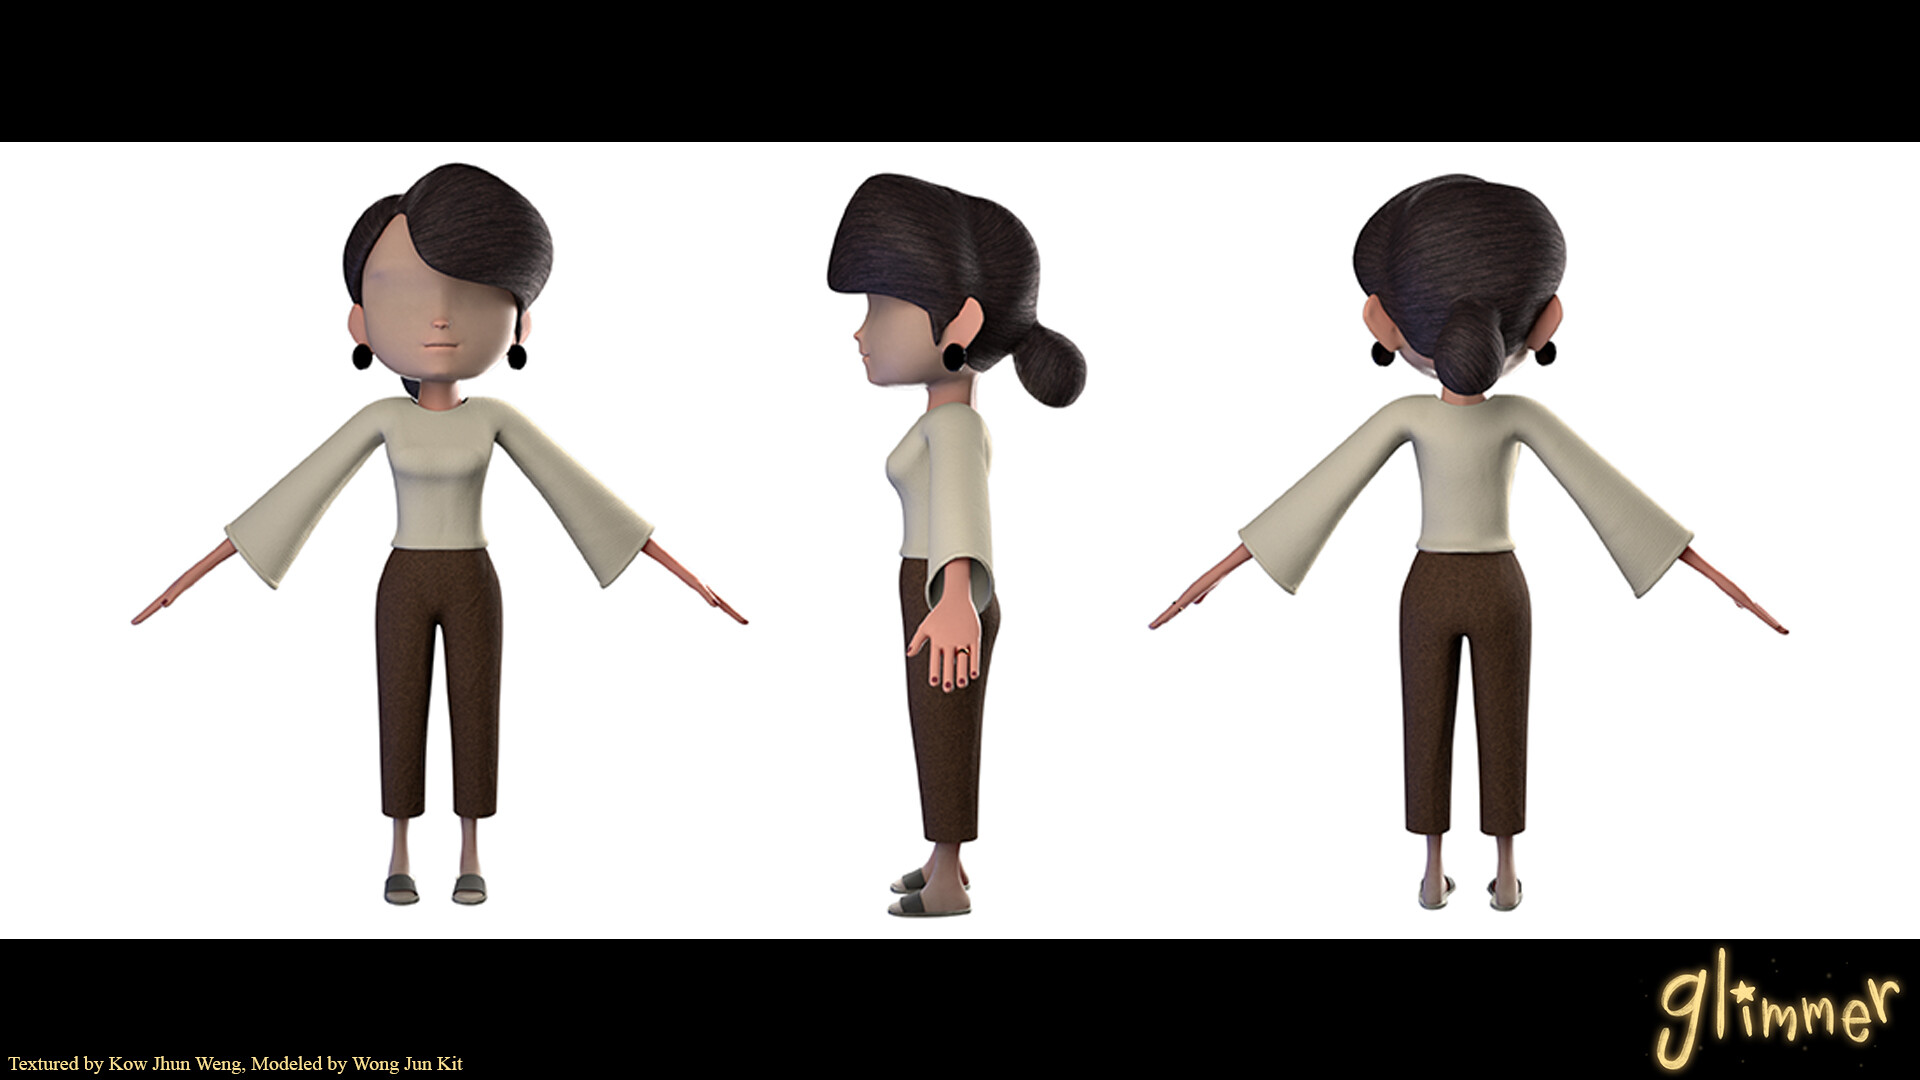 ArtStation - Glimmer - CGI Animated Short Film (My Works)